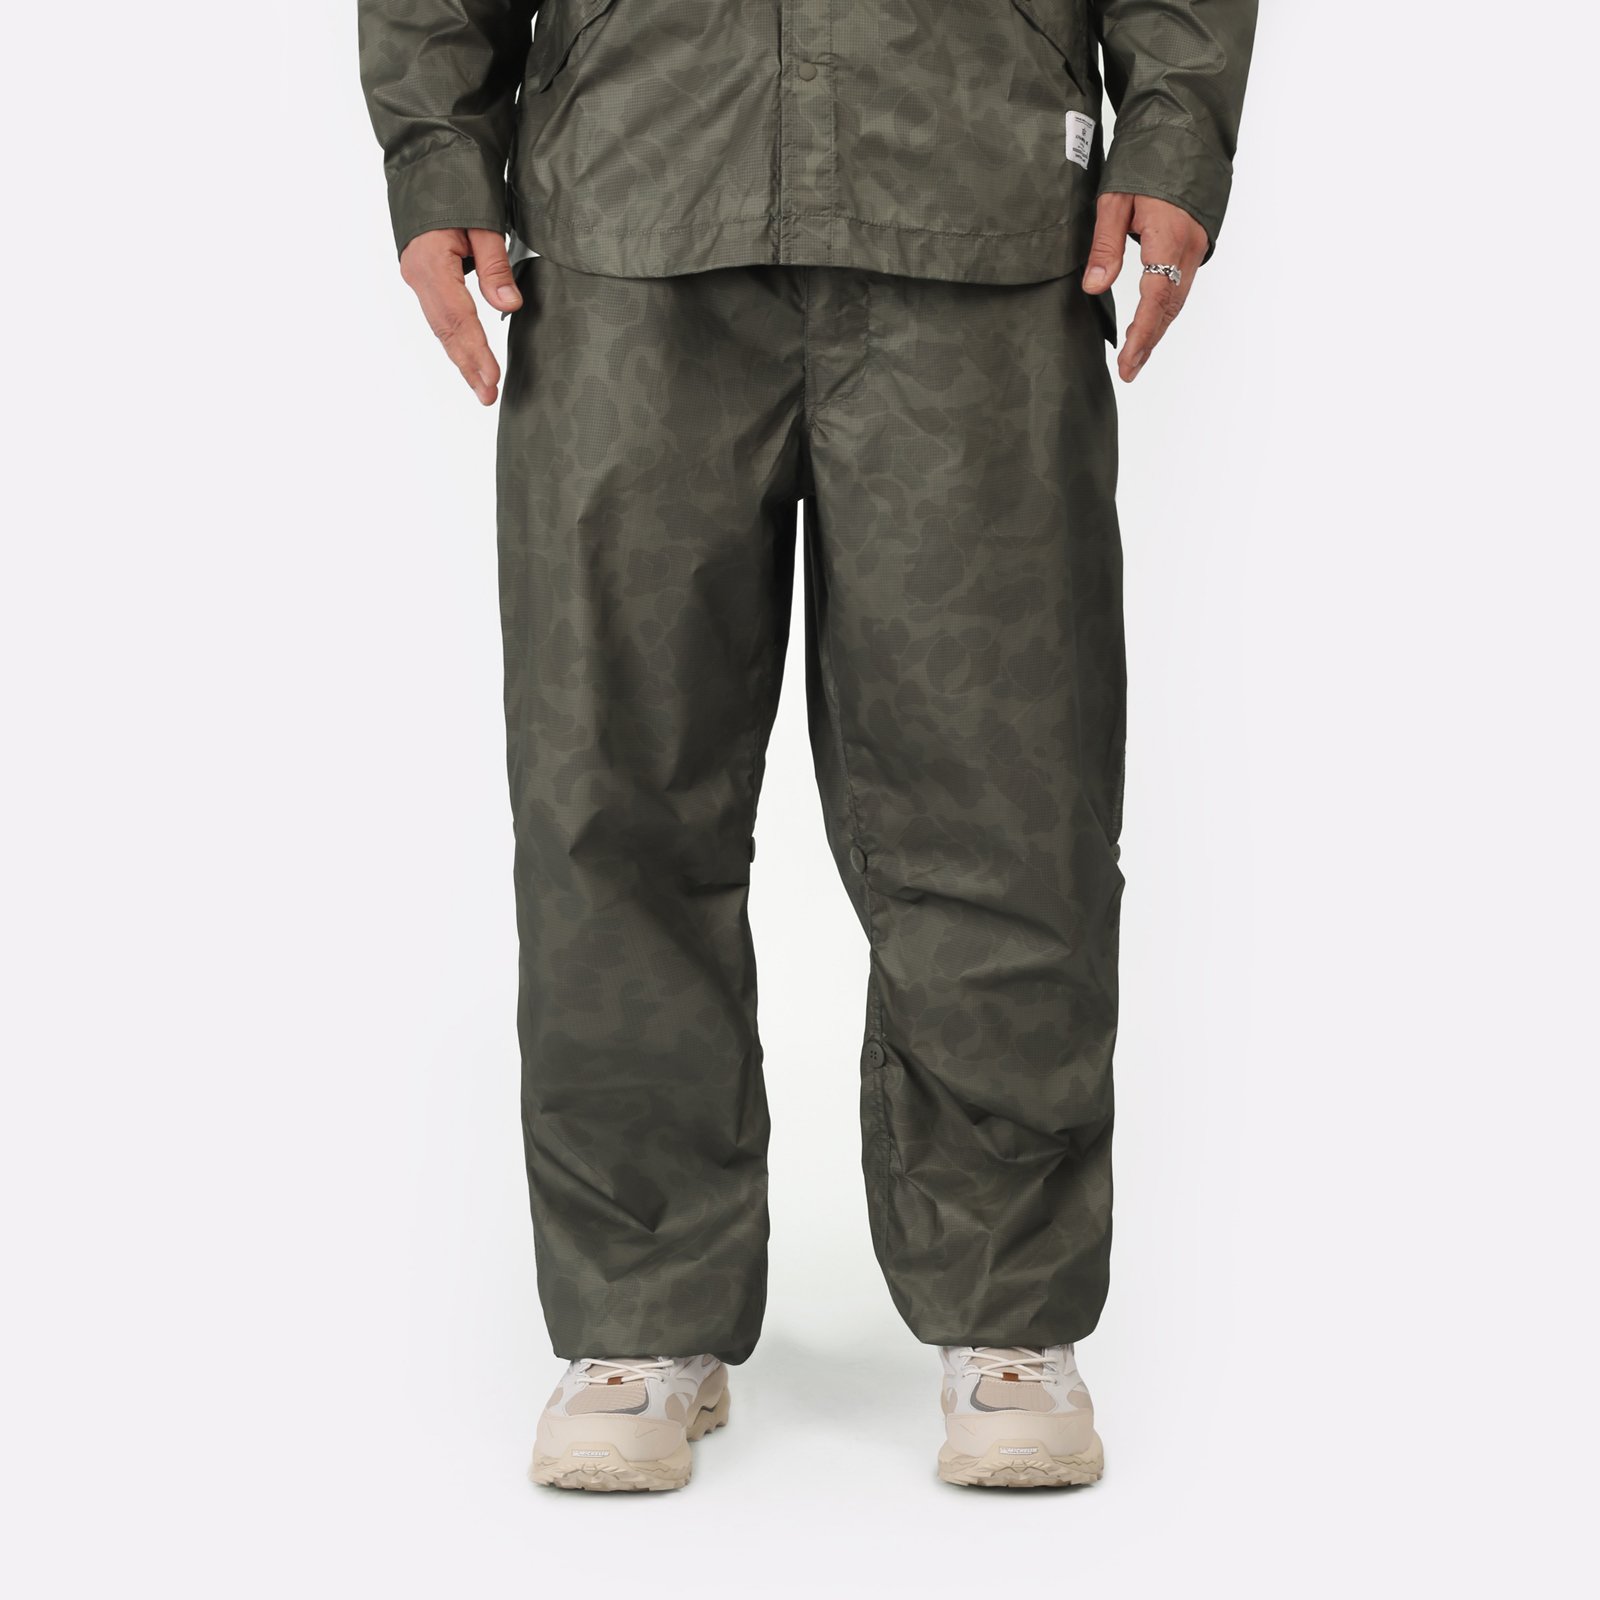 Мужские брюки Alpha Industries Ripstop Parachute Pants (UBU54001C1-OG-107-green)  - цена, описание, фото 1